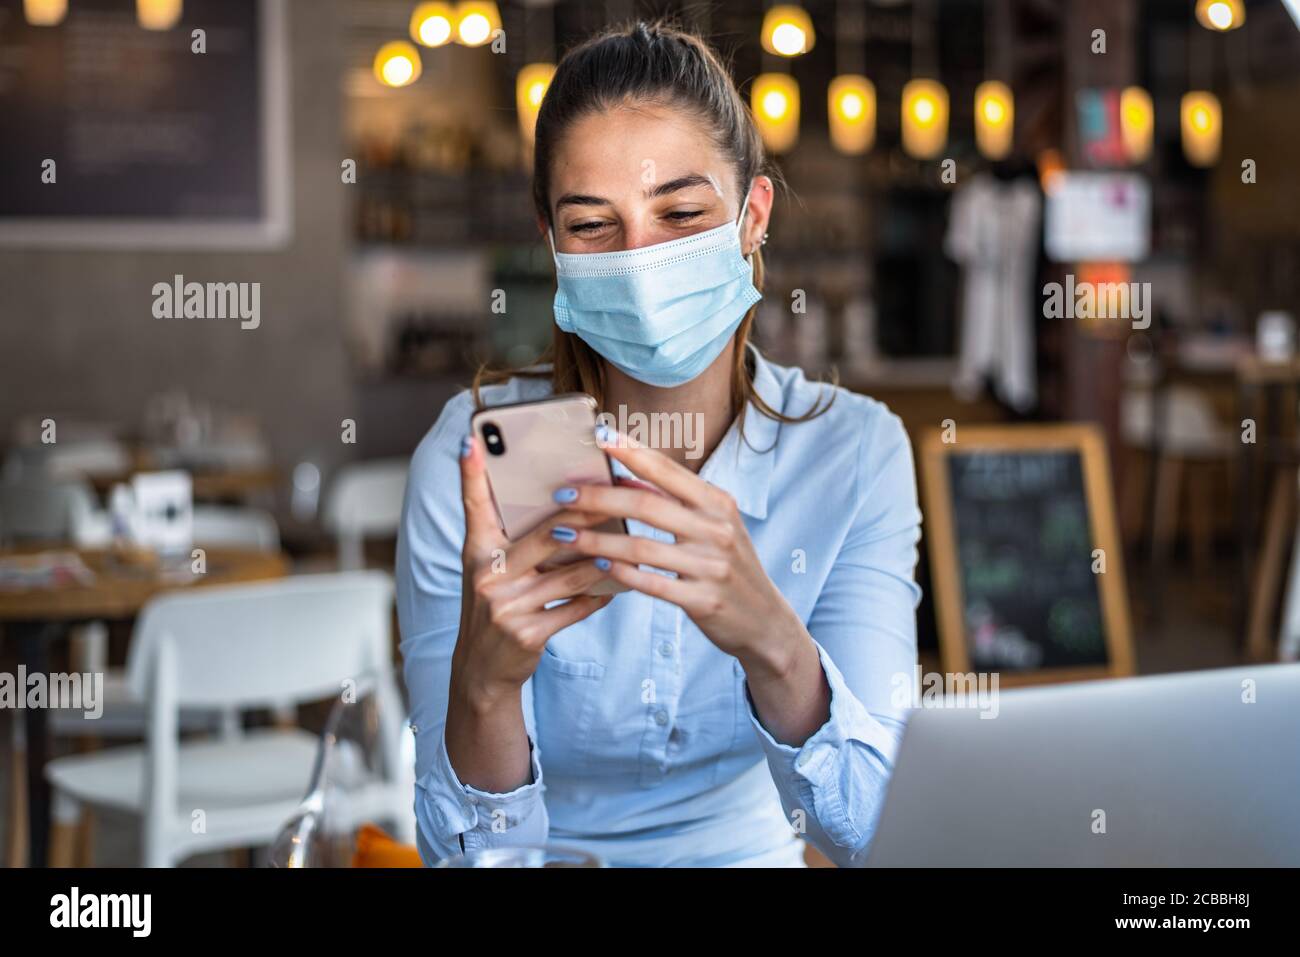 Portrait d'une jeune femme d'affaires, portant un masque tout en parlant sur un téléphone portable. Concept de nouveau mode de vie normal pendant la pandémie de Covid-19. Banque D'Images